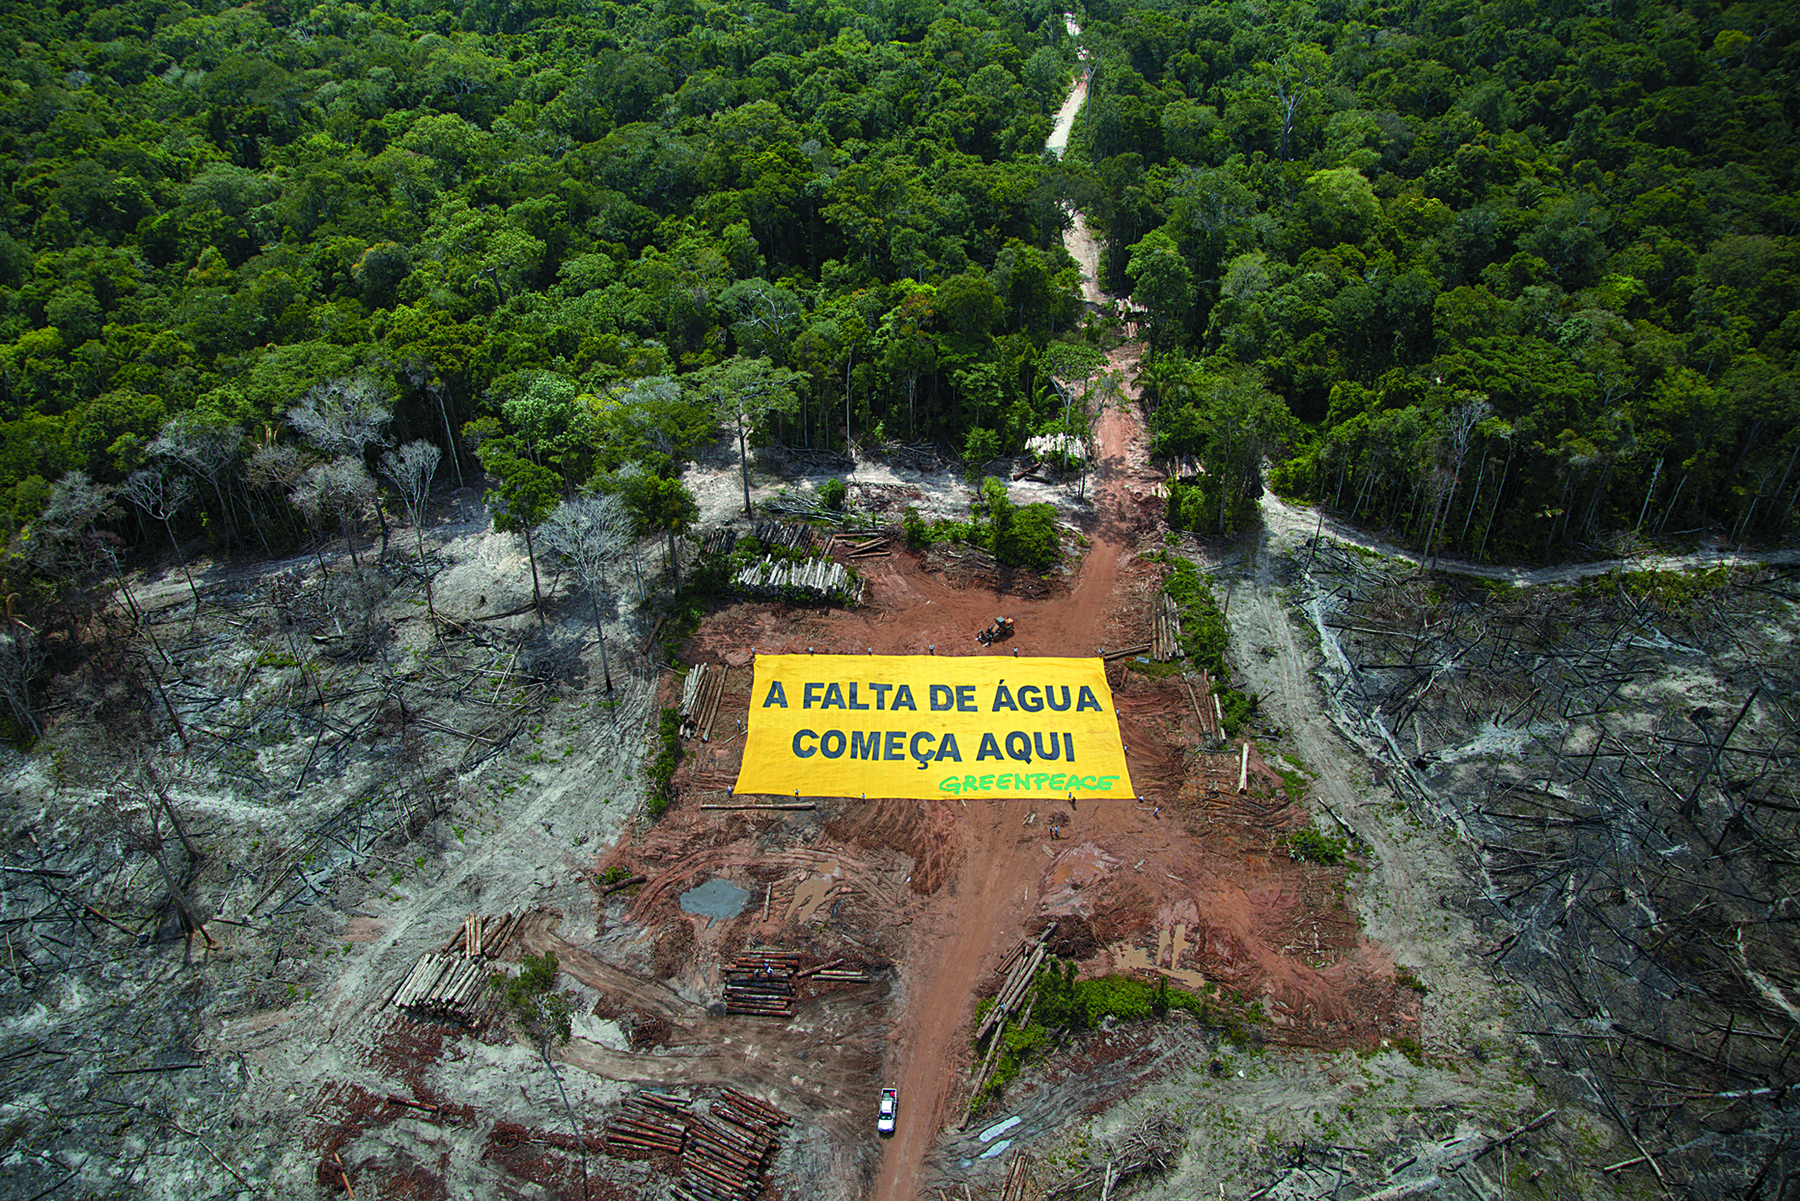 Fotografia. Vista aérea. Área desmatada, de terra com uma faixa com a inscrição: A FALTA DE ÁGUA COMEÇA AQUI. Ao lado há áreas queimadas e ao fundo, uma floresta.